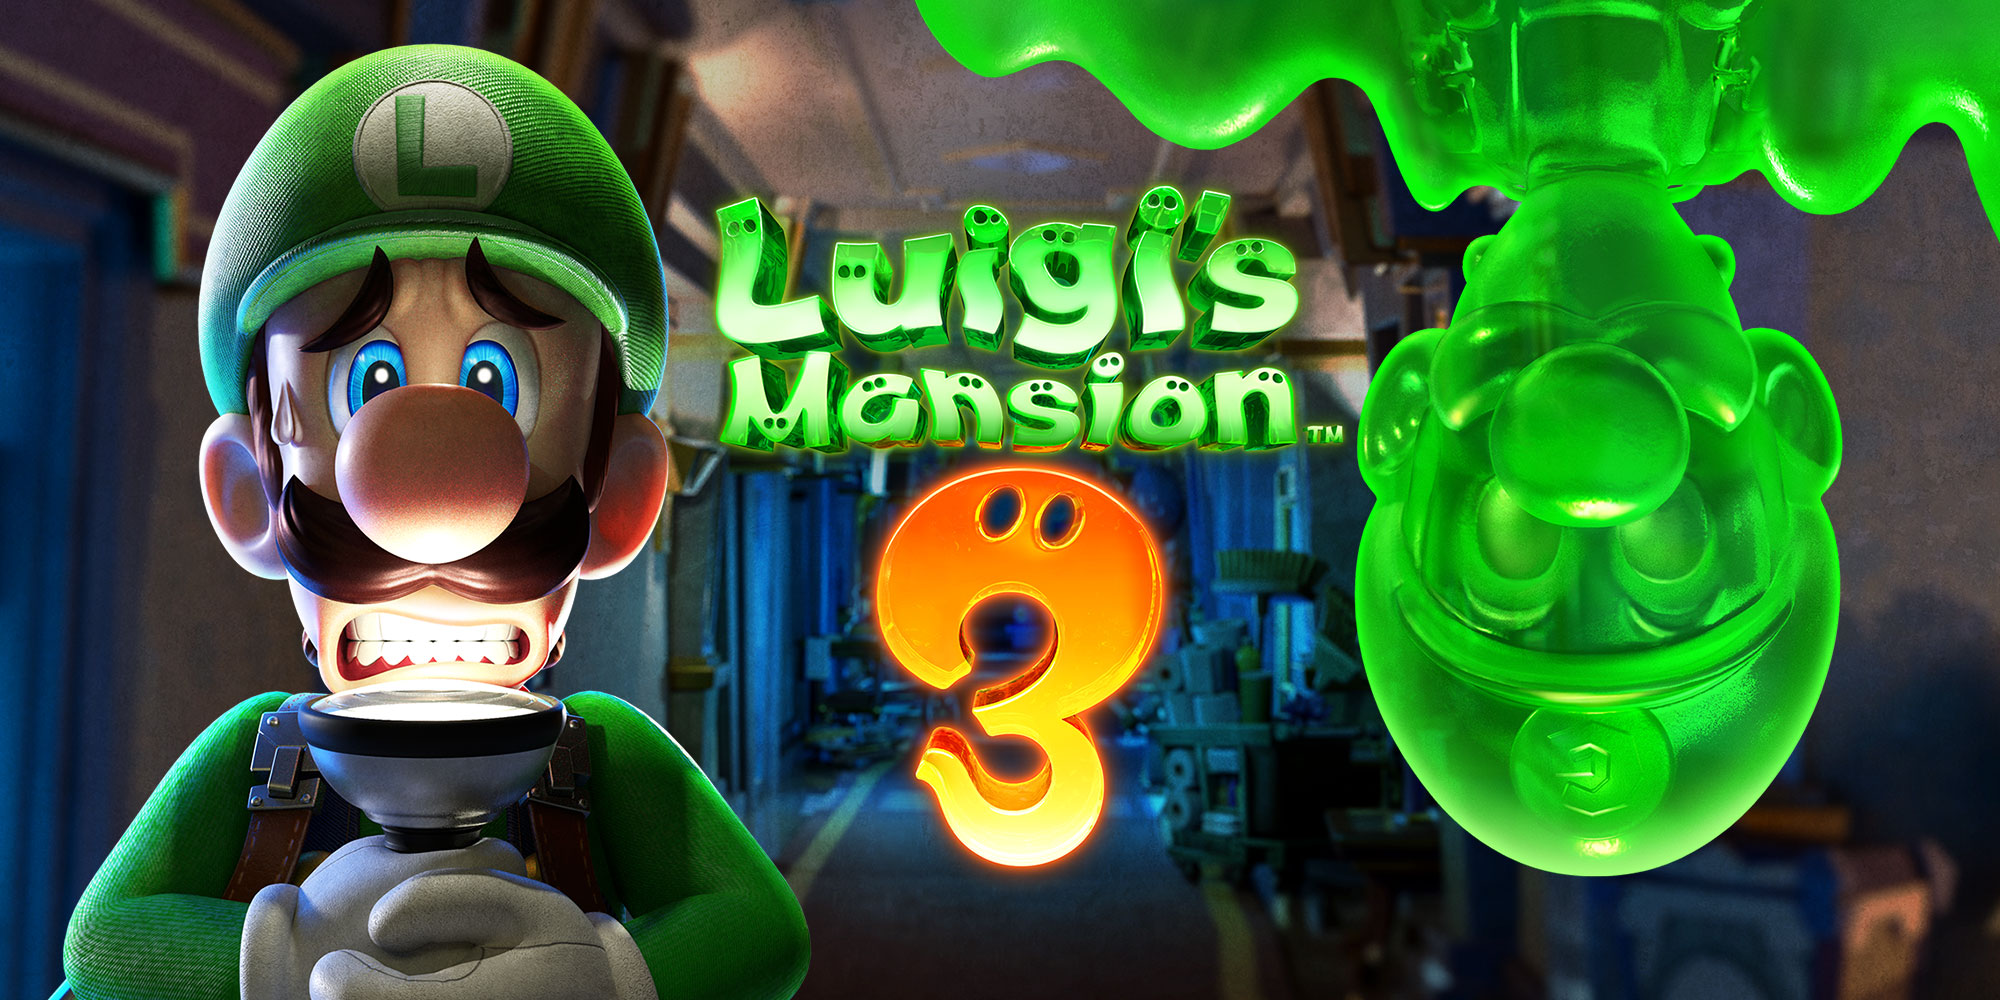 Завернитесь в одеяло и приготовьтесь бояться! Luigi's Mansion 3 выйдет на Nintendo Switch 31 октября!